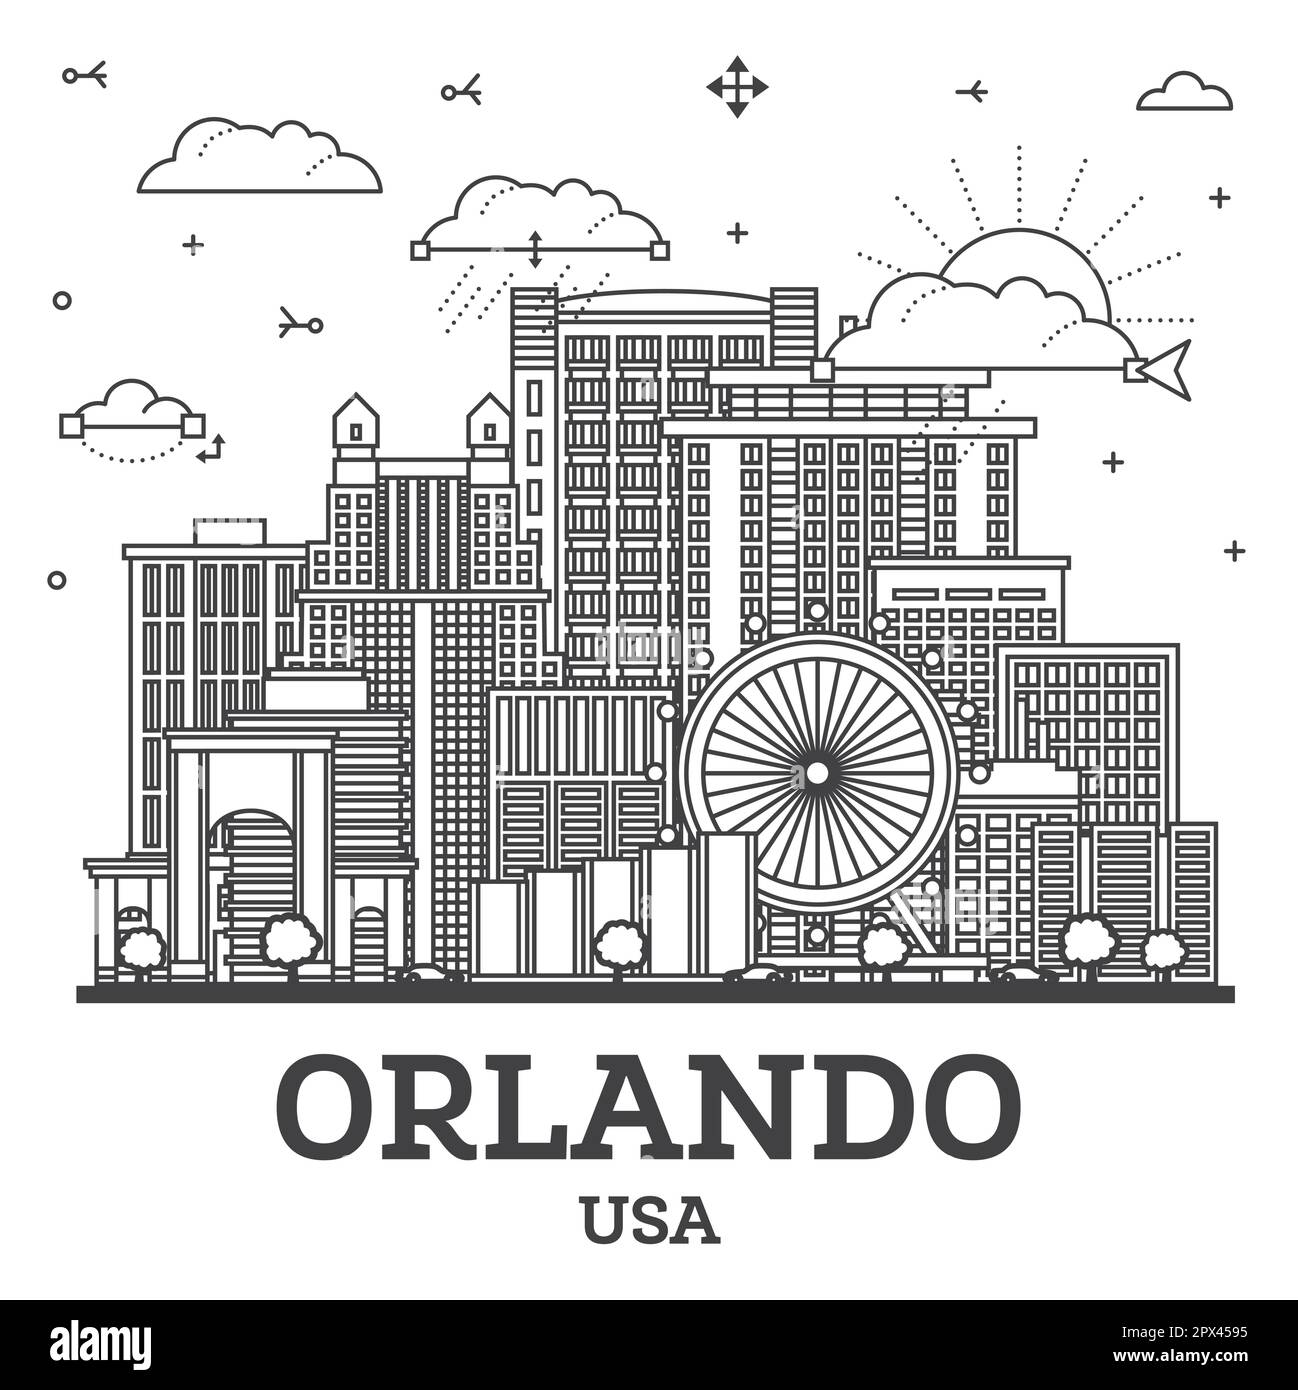 Umreißen Sie die Skyline von Orlando Florida City mit modernen und historischen Gebäuden, die auf White isoliert sind. Vektorgrafik. Orlando USA Stadtbild mit Wahrzeichen. Stock Vektor